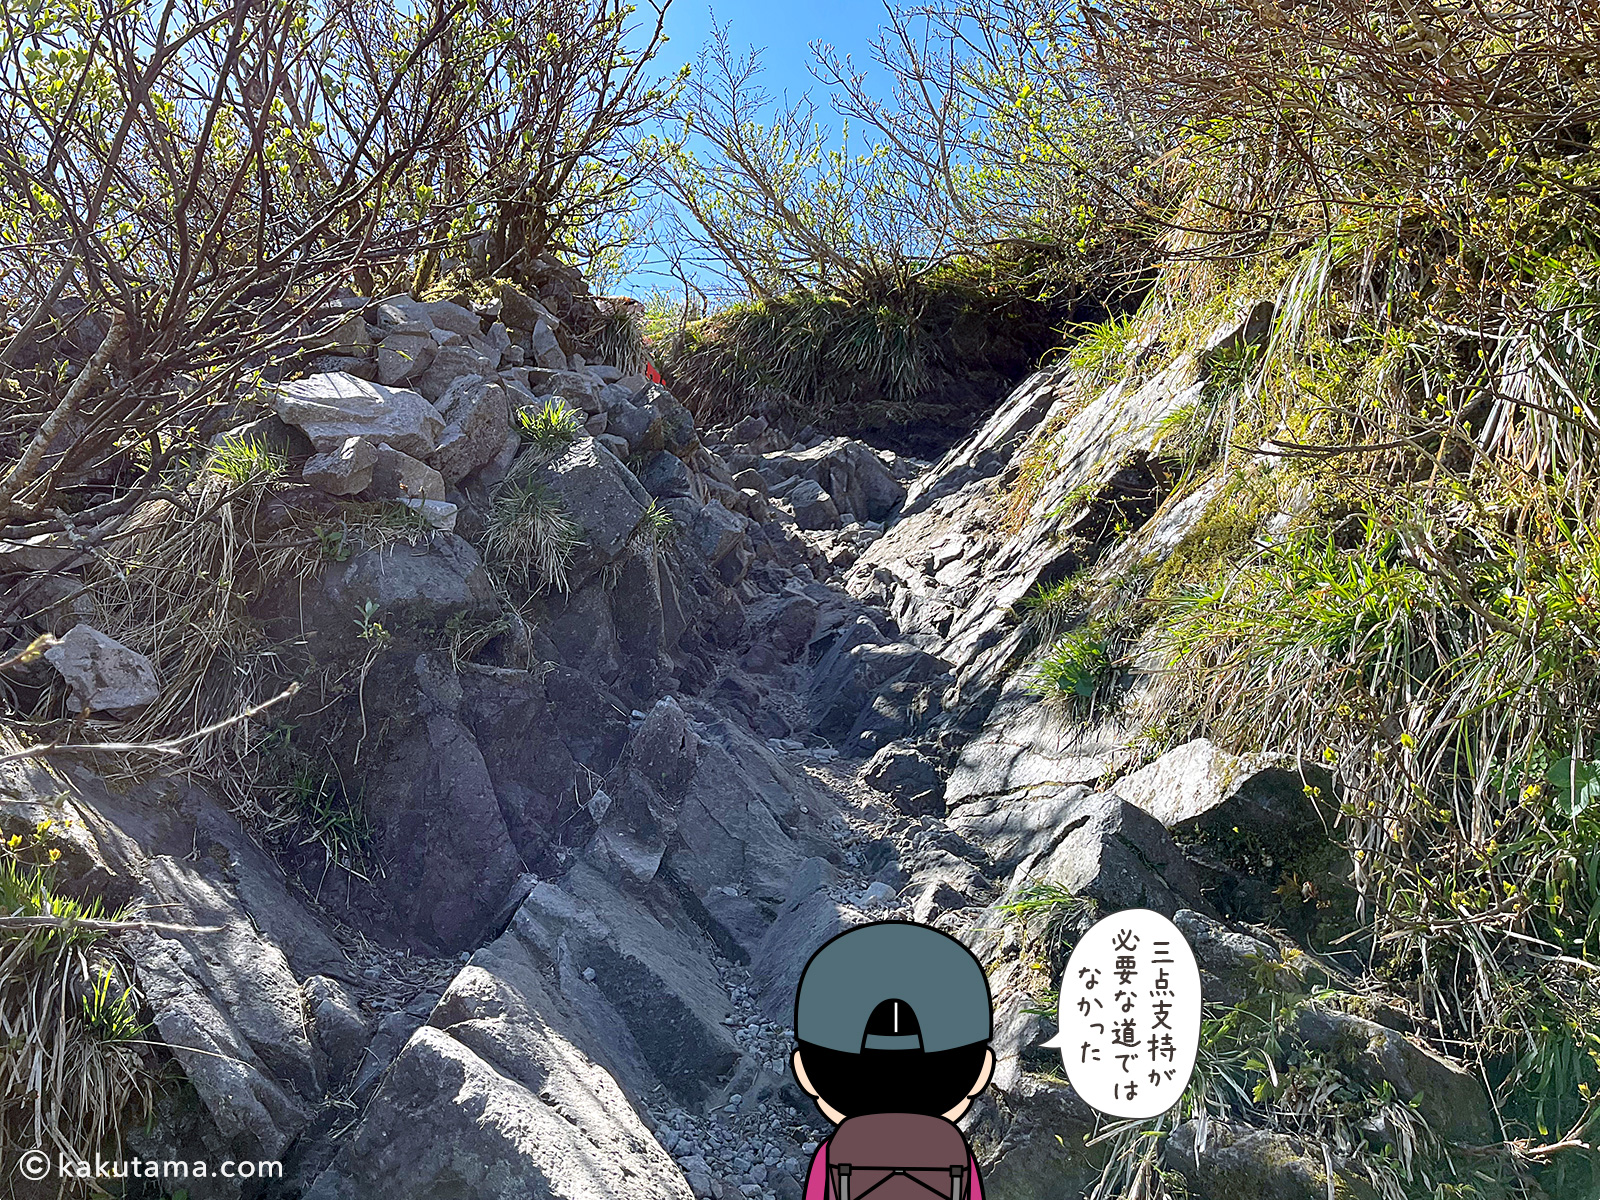 鳥取大山の夏山登山道唯一の岩場の写真と登山者のイラスト